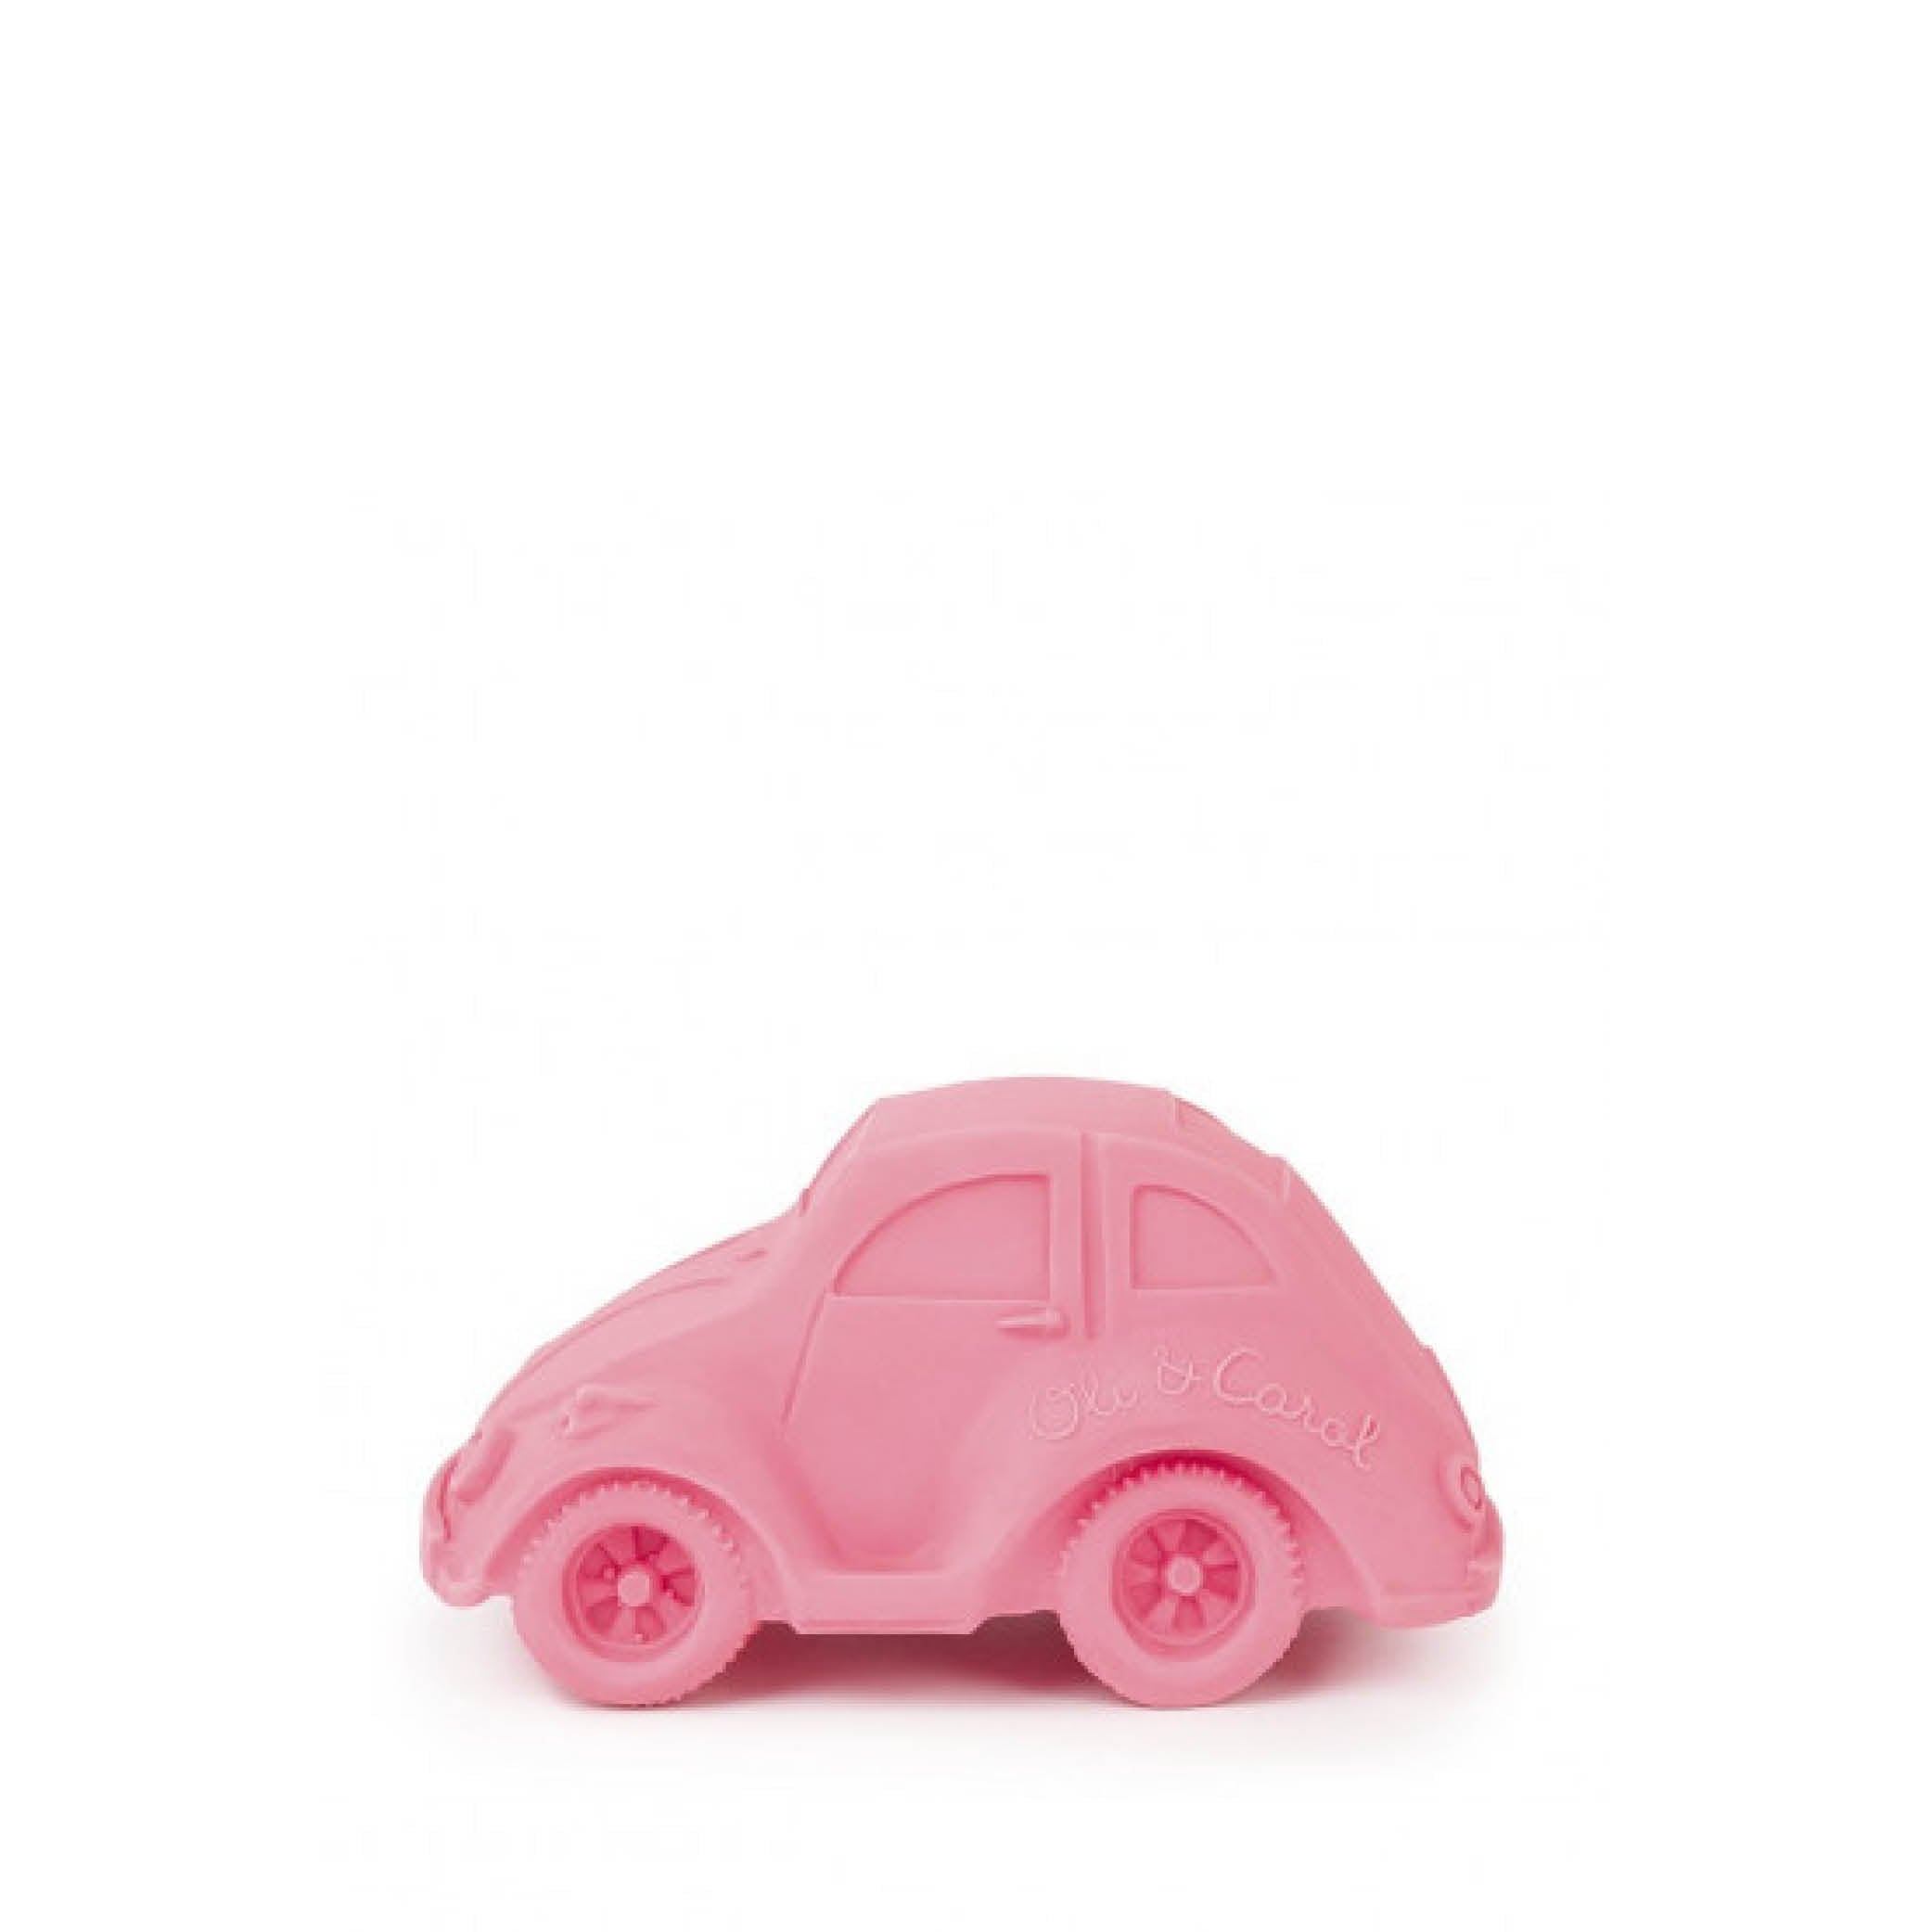 Baby Zahnspielzeug Beißring Teether Carlito in pink aus Naturkautschuk und von Hand bemalt mit speiseechten Farben - 100% natürlich von Oli und Carol bei kinder und konsorten Düsseldorf